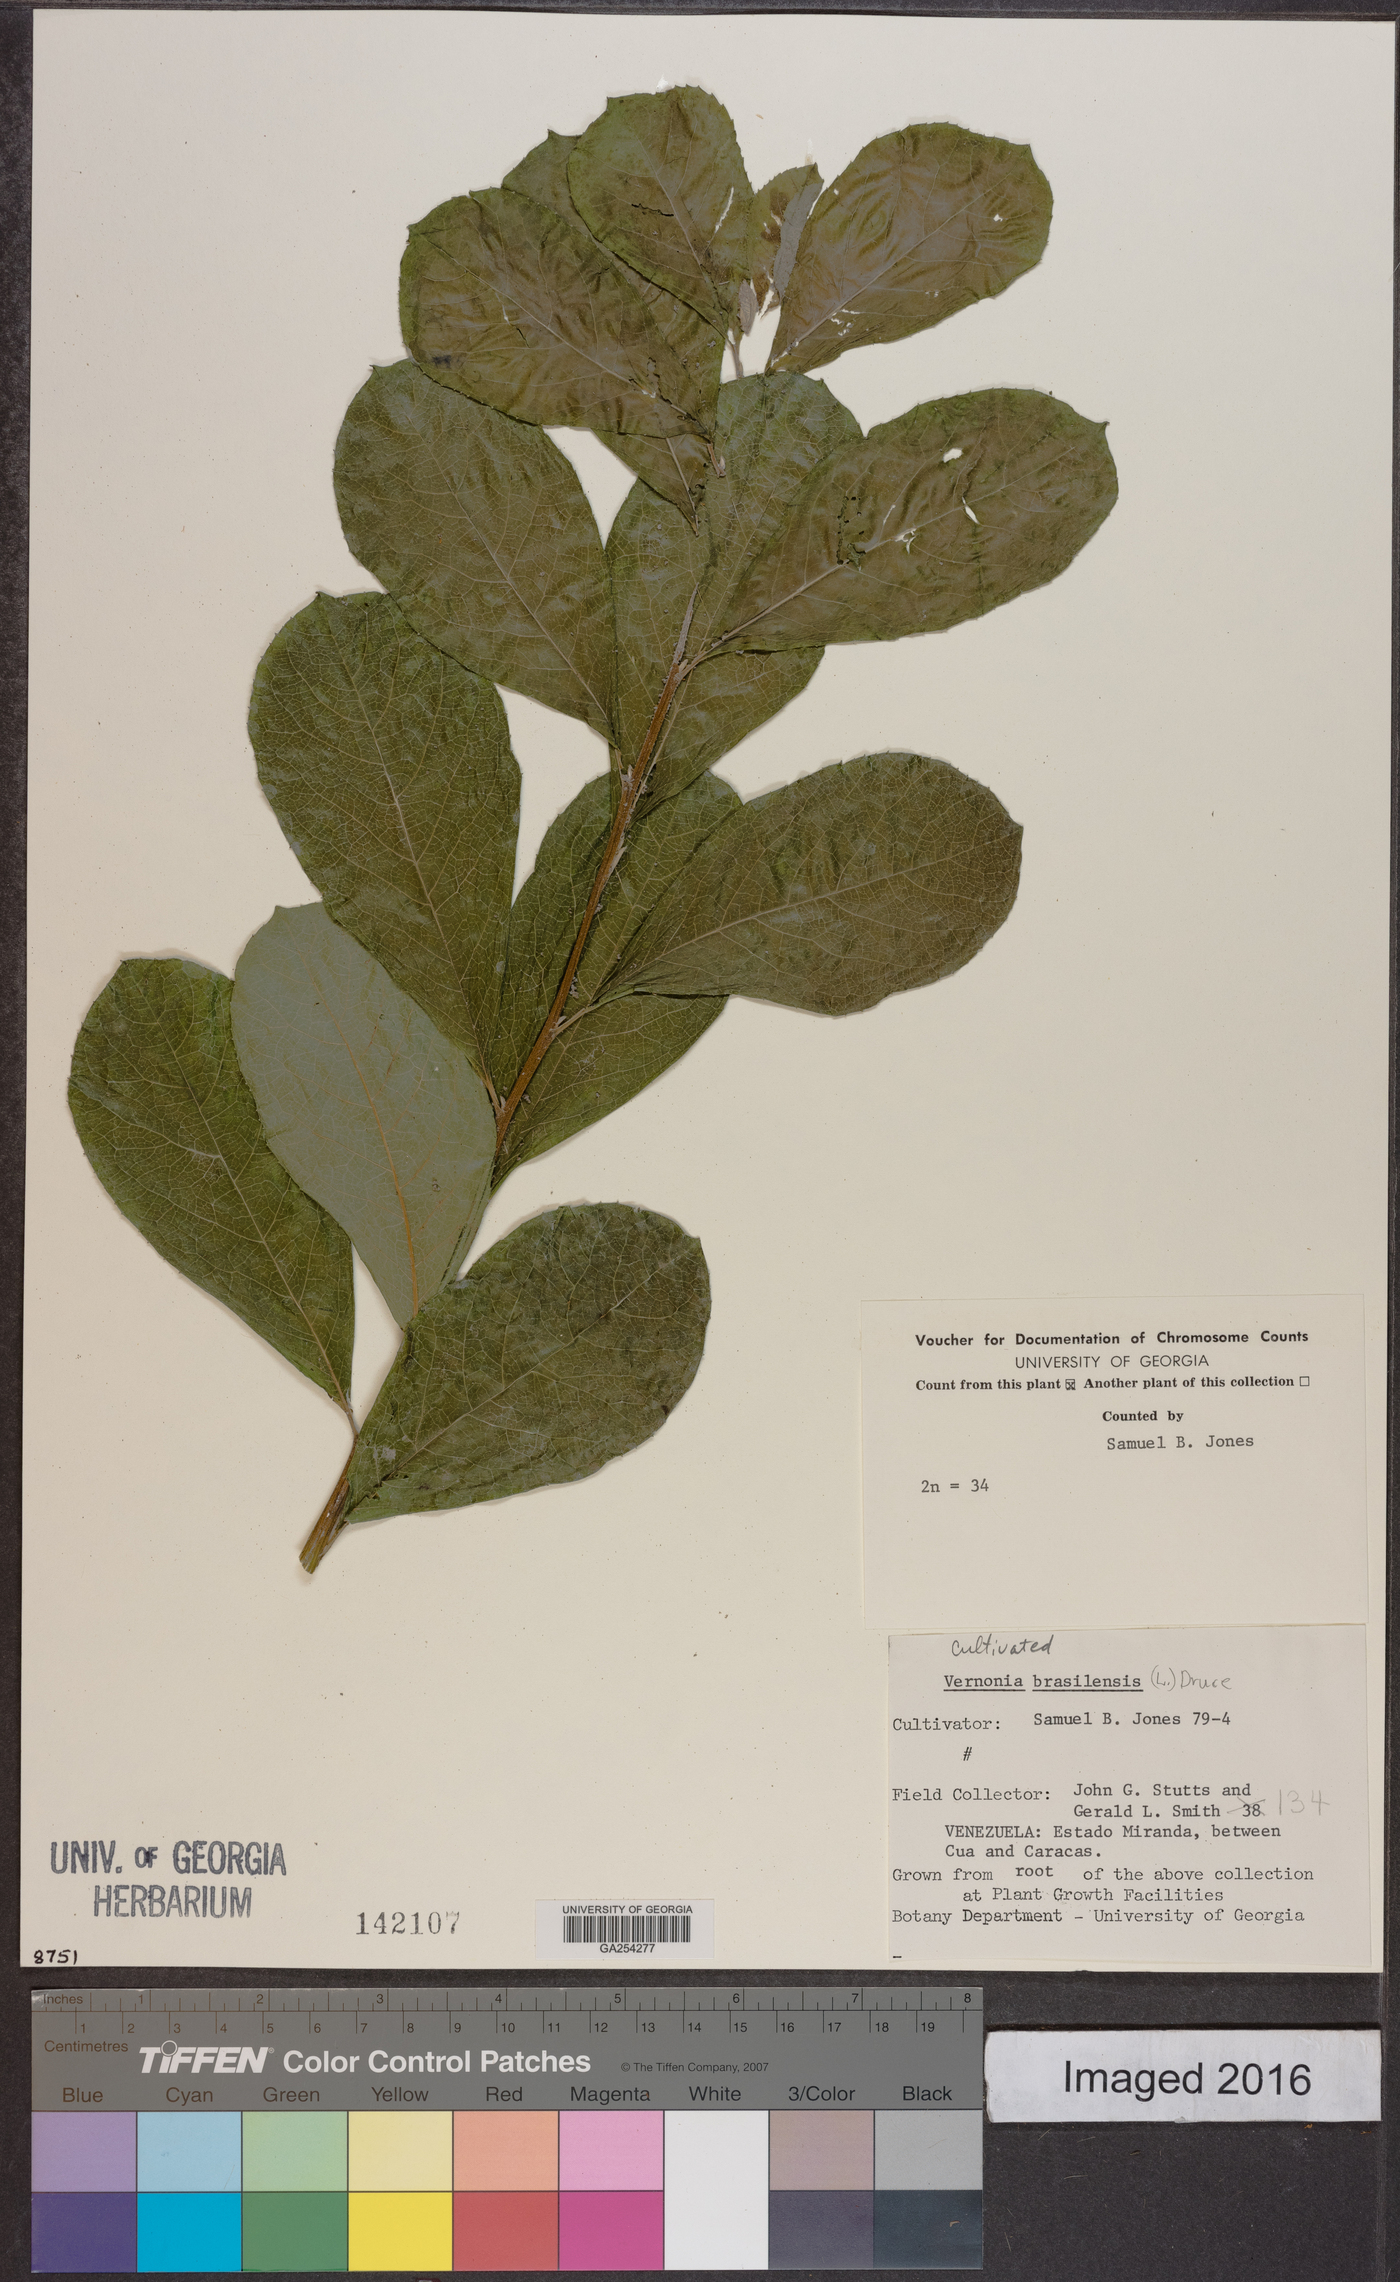 Vernonia brasiliensis image